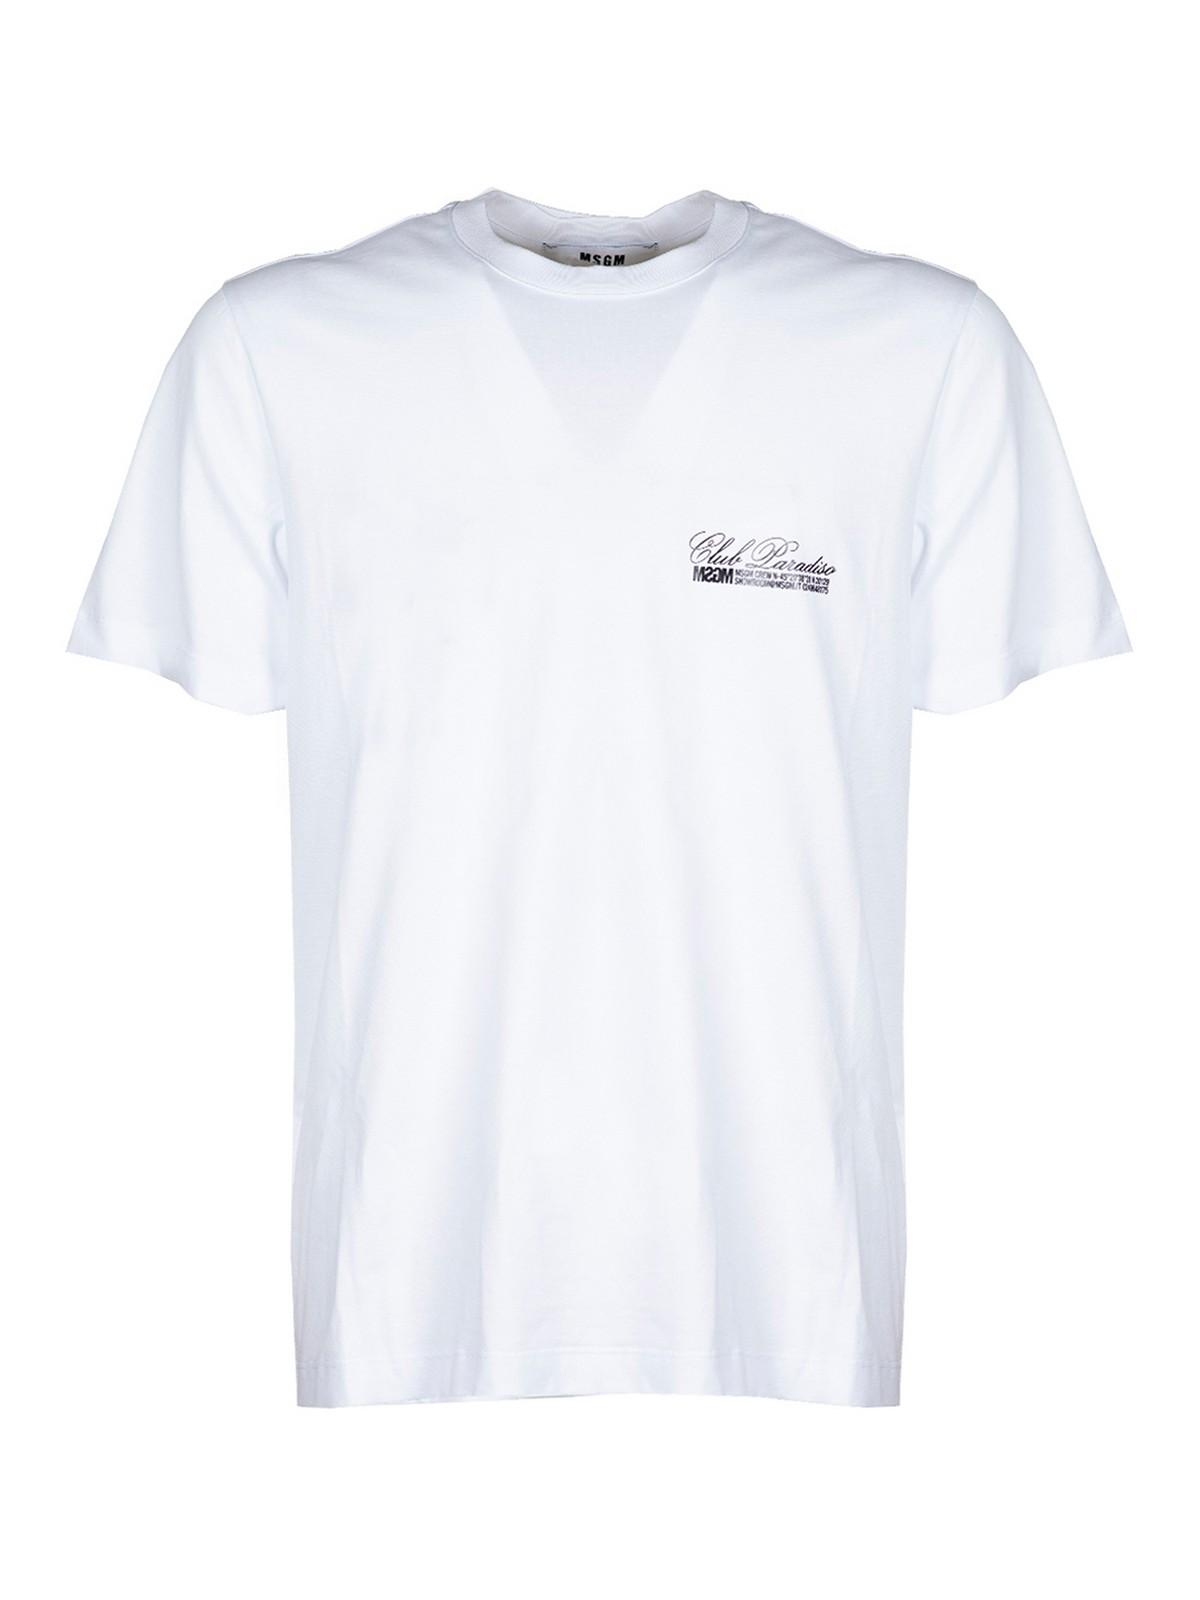 Msgm Club Paradiso T-shirt In White